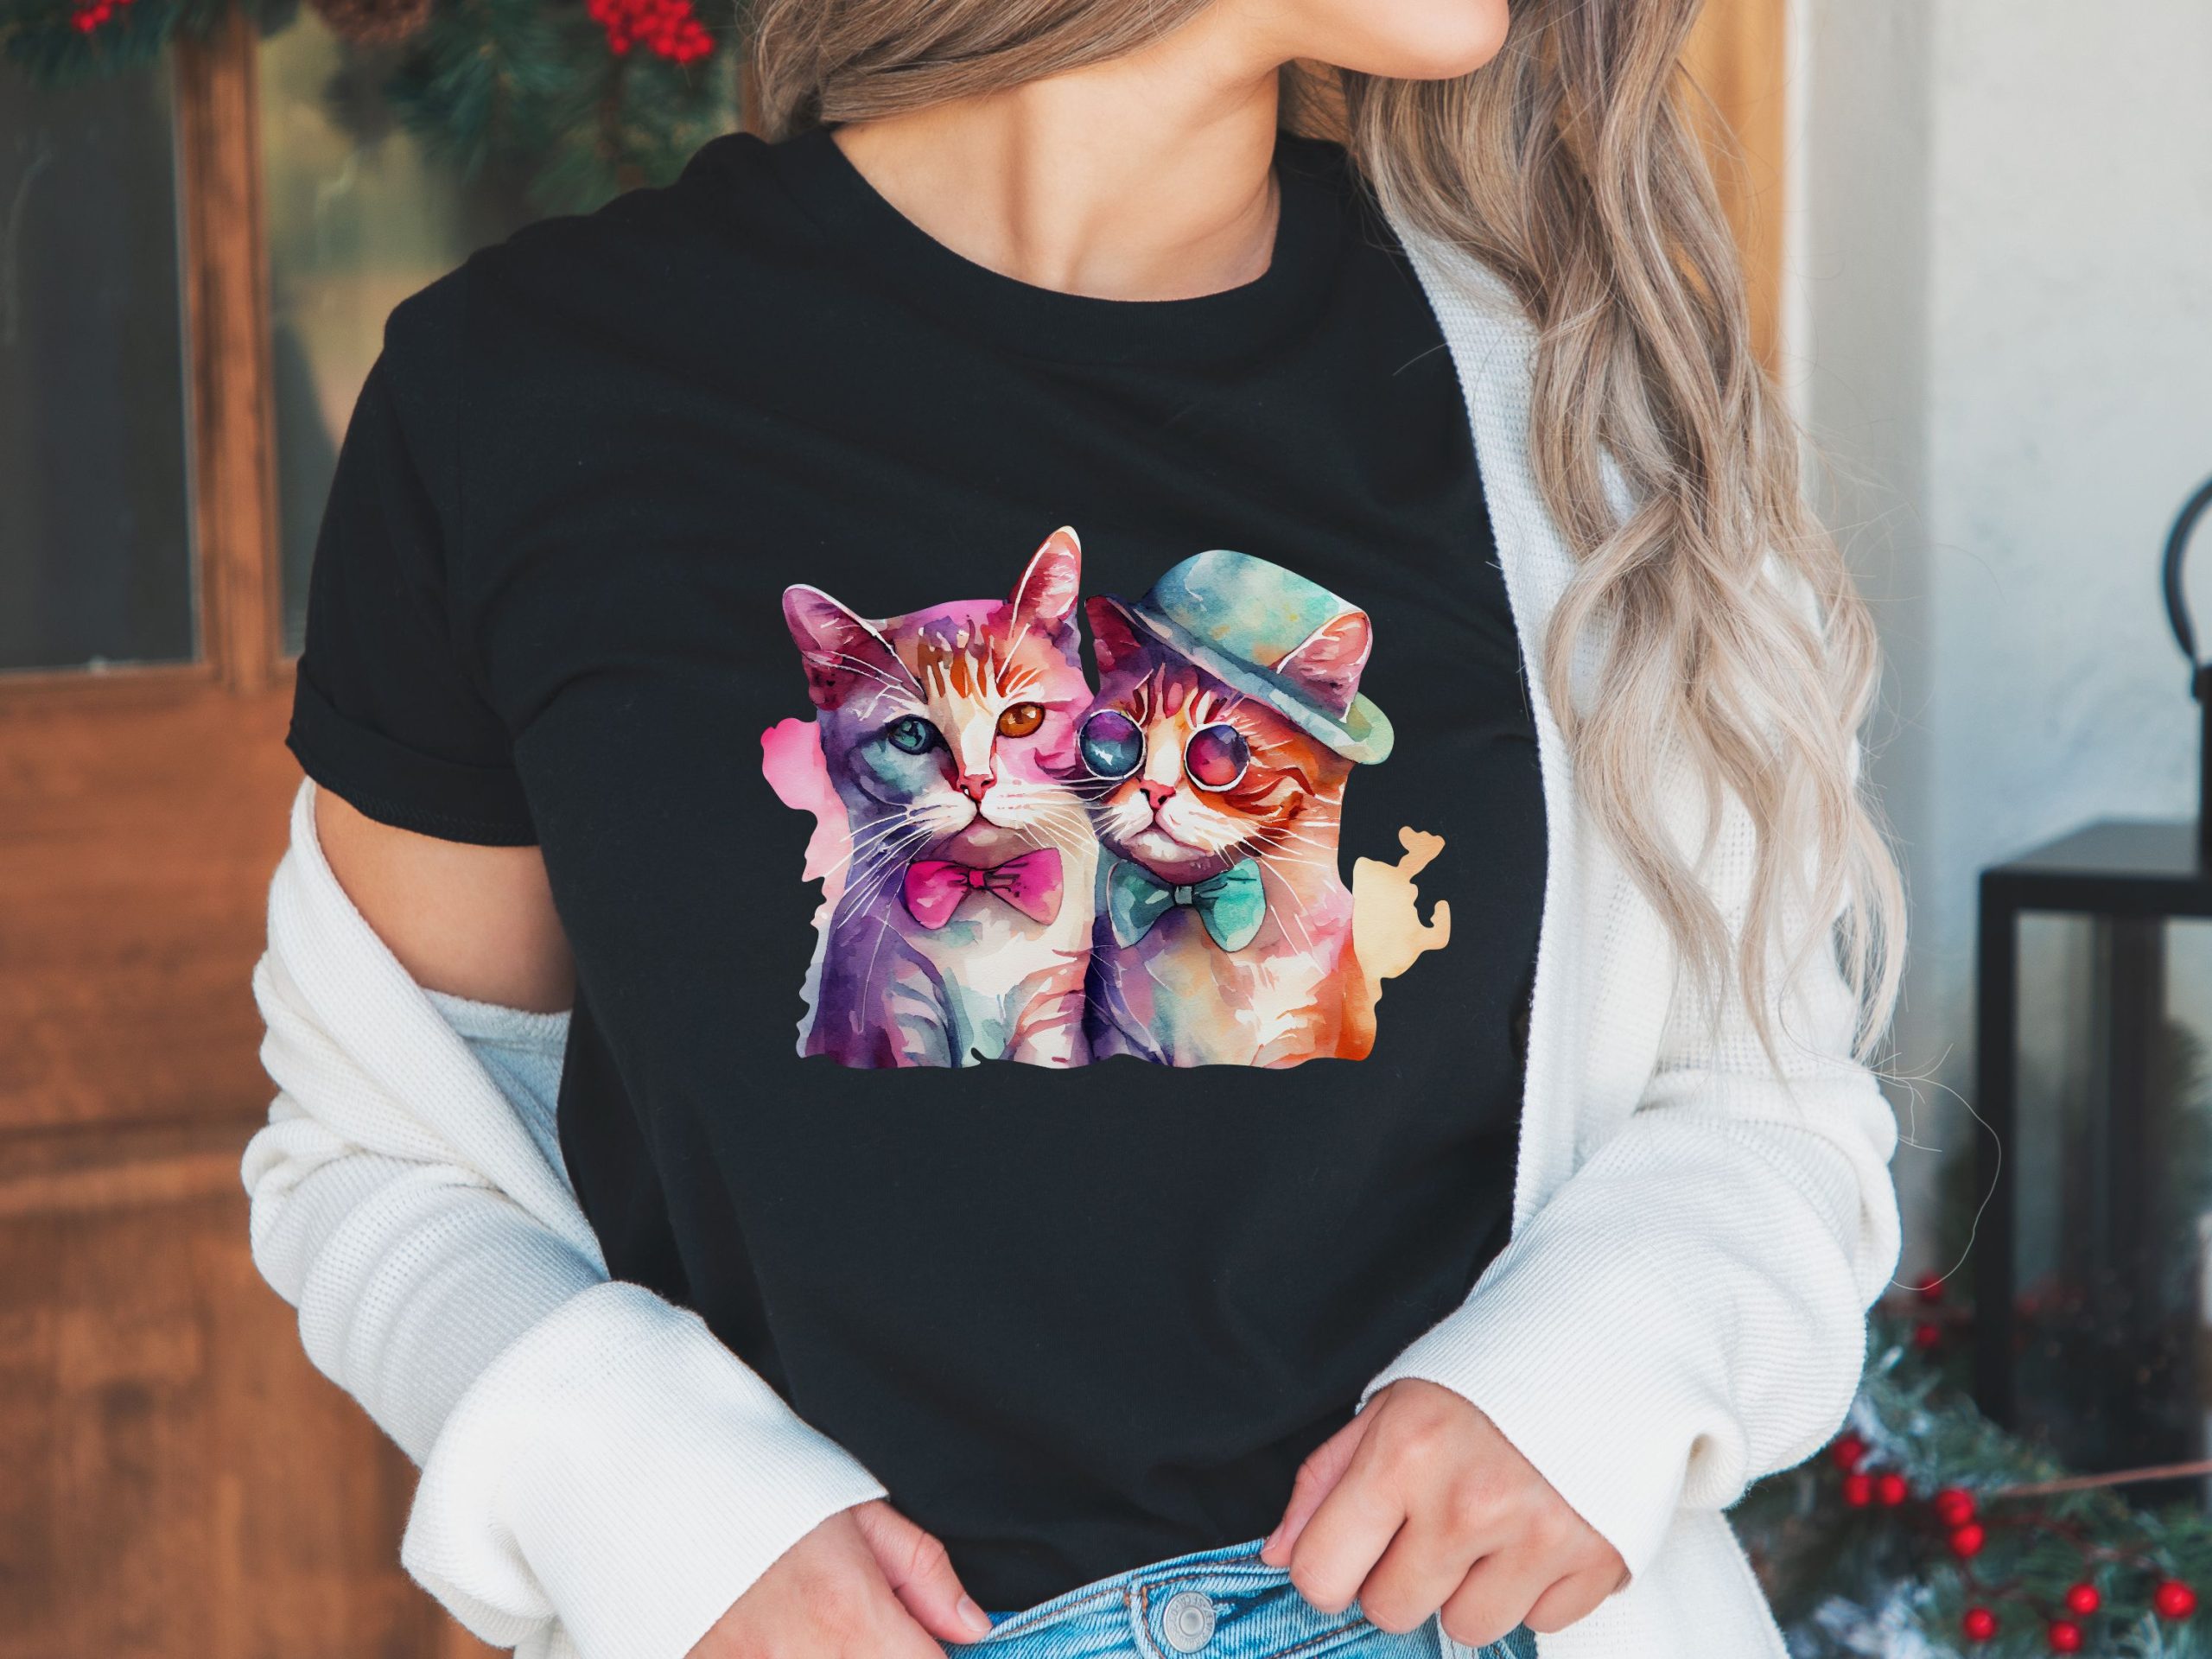 Cute cats t-shirt, Valentine shirt women, Lgbt gifts